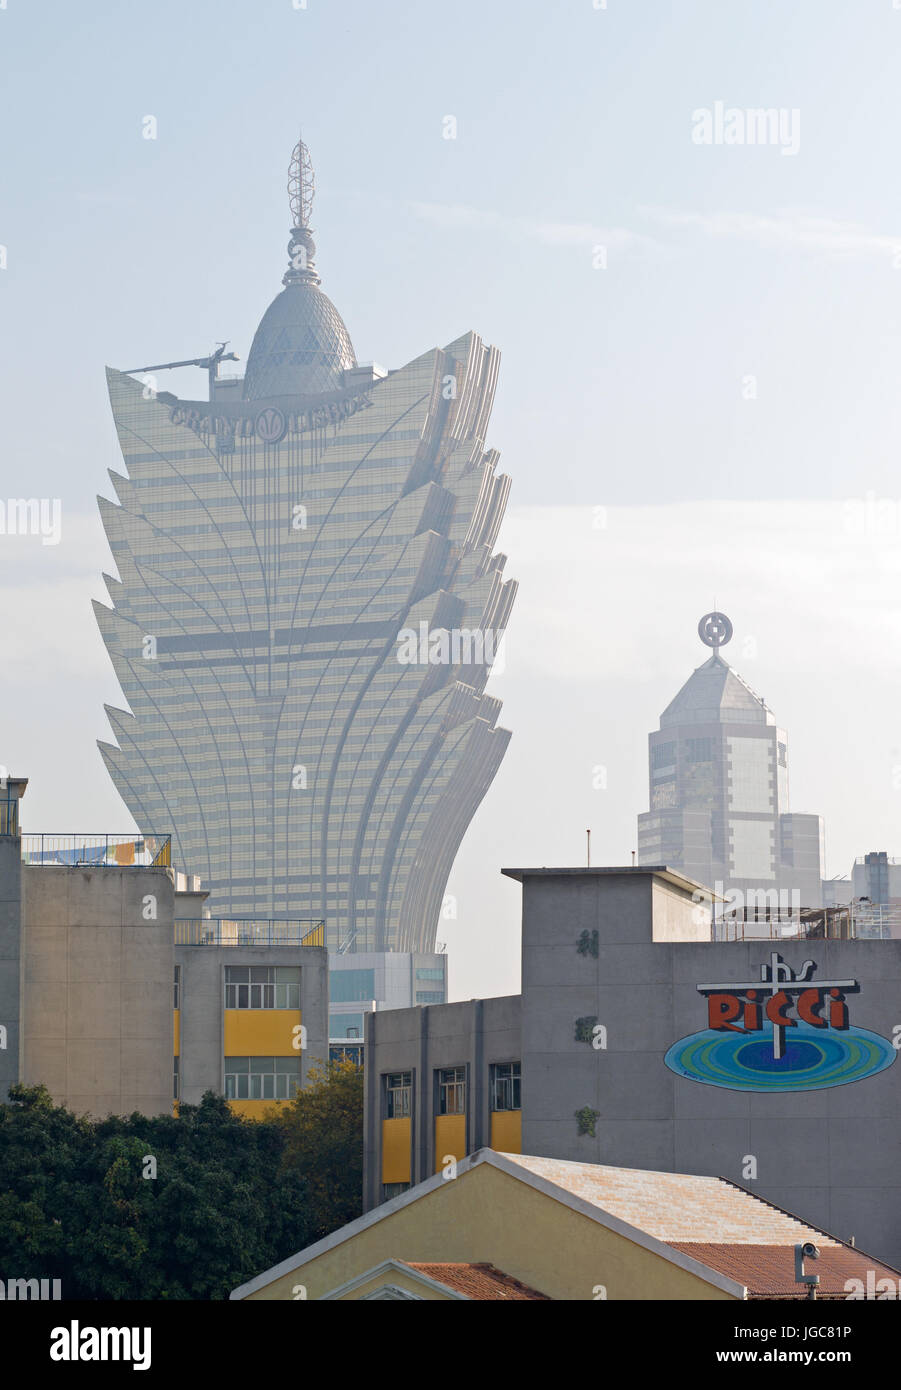 O sucesso do turismo em Macau tem nome: jogos - Agente no Turismo